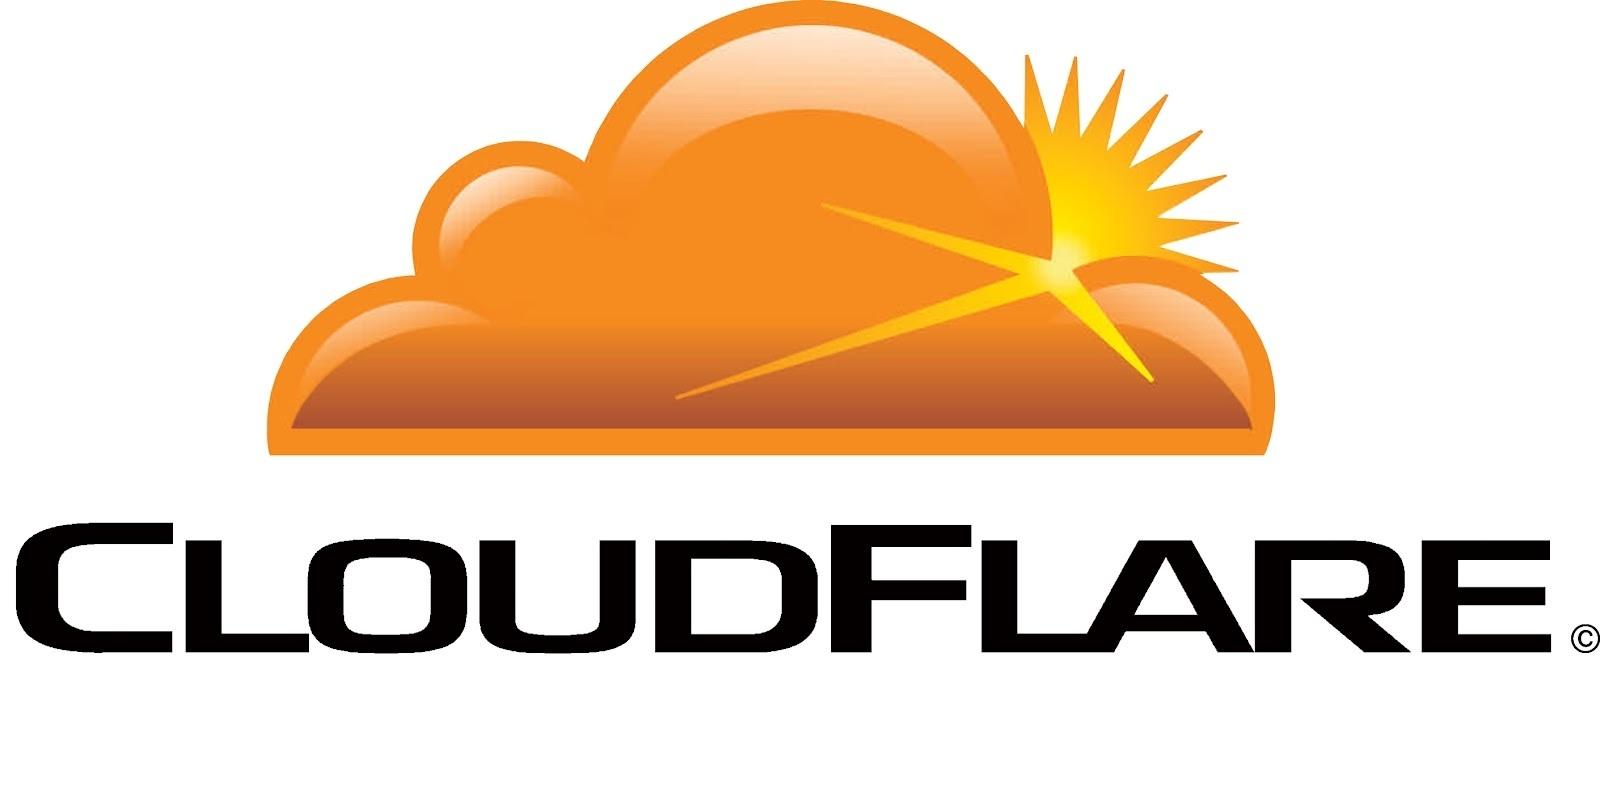 Cloudflare выявили крупную утечку: под угрозой множество паролей и личных данных